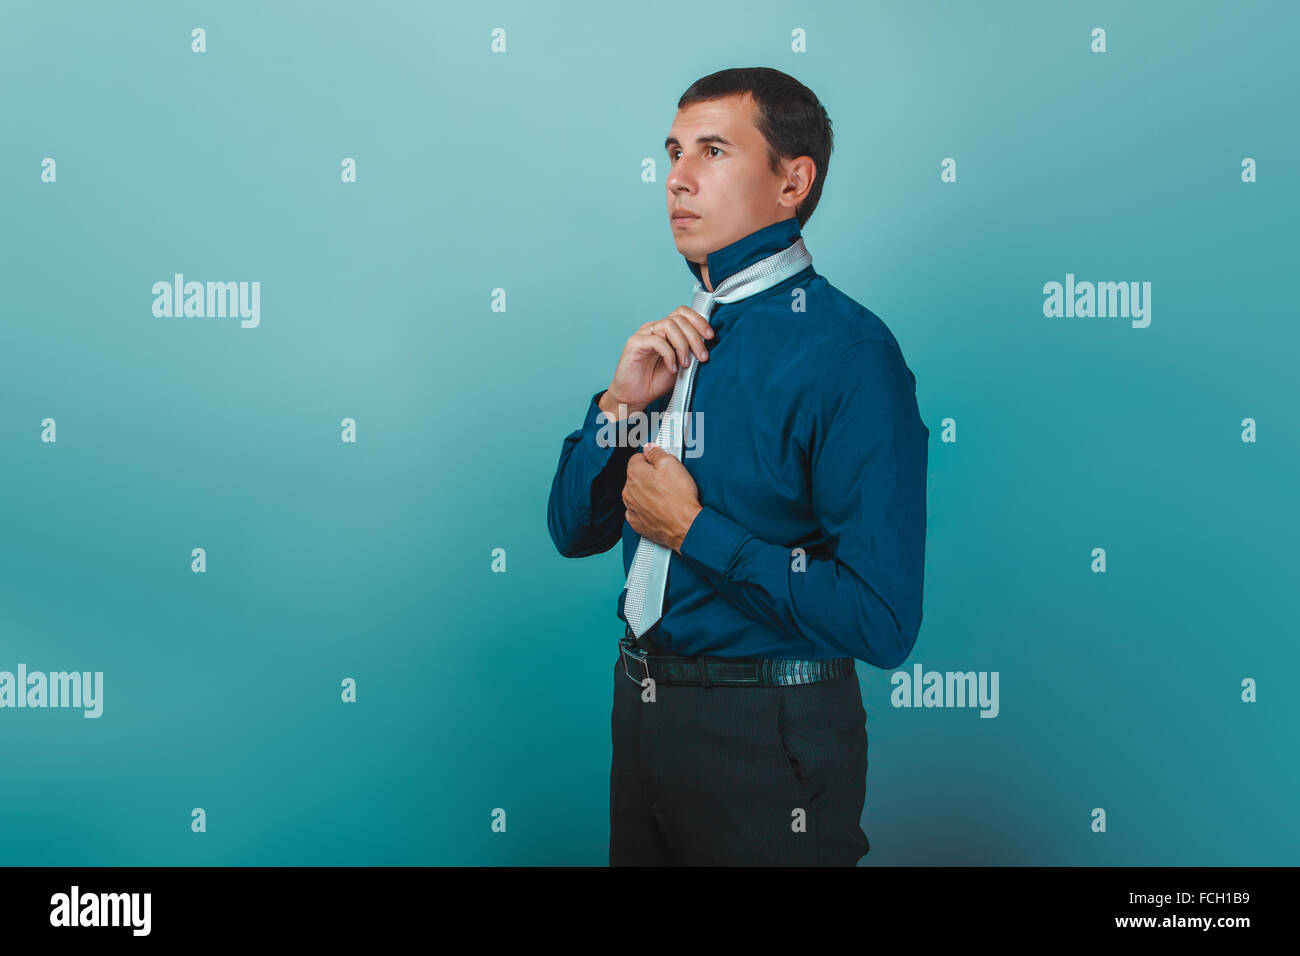 Un hombre de aspecto europeo treinta años endereza su corbata Foto de stock